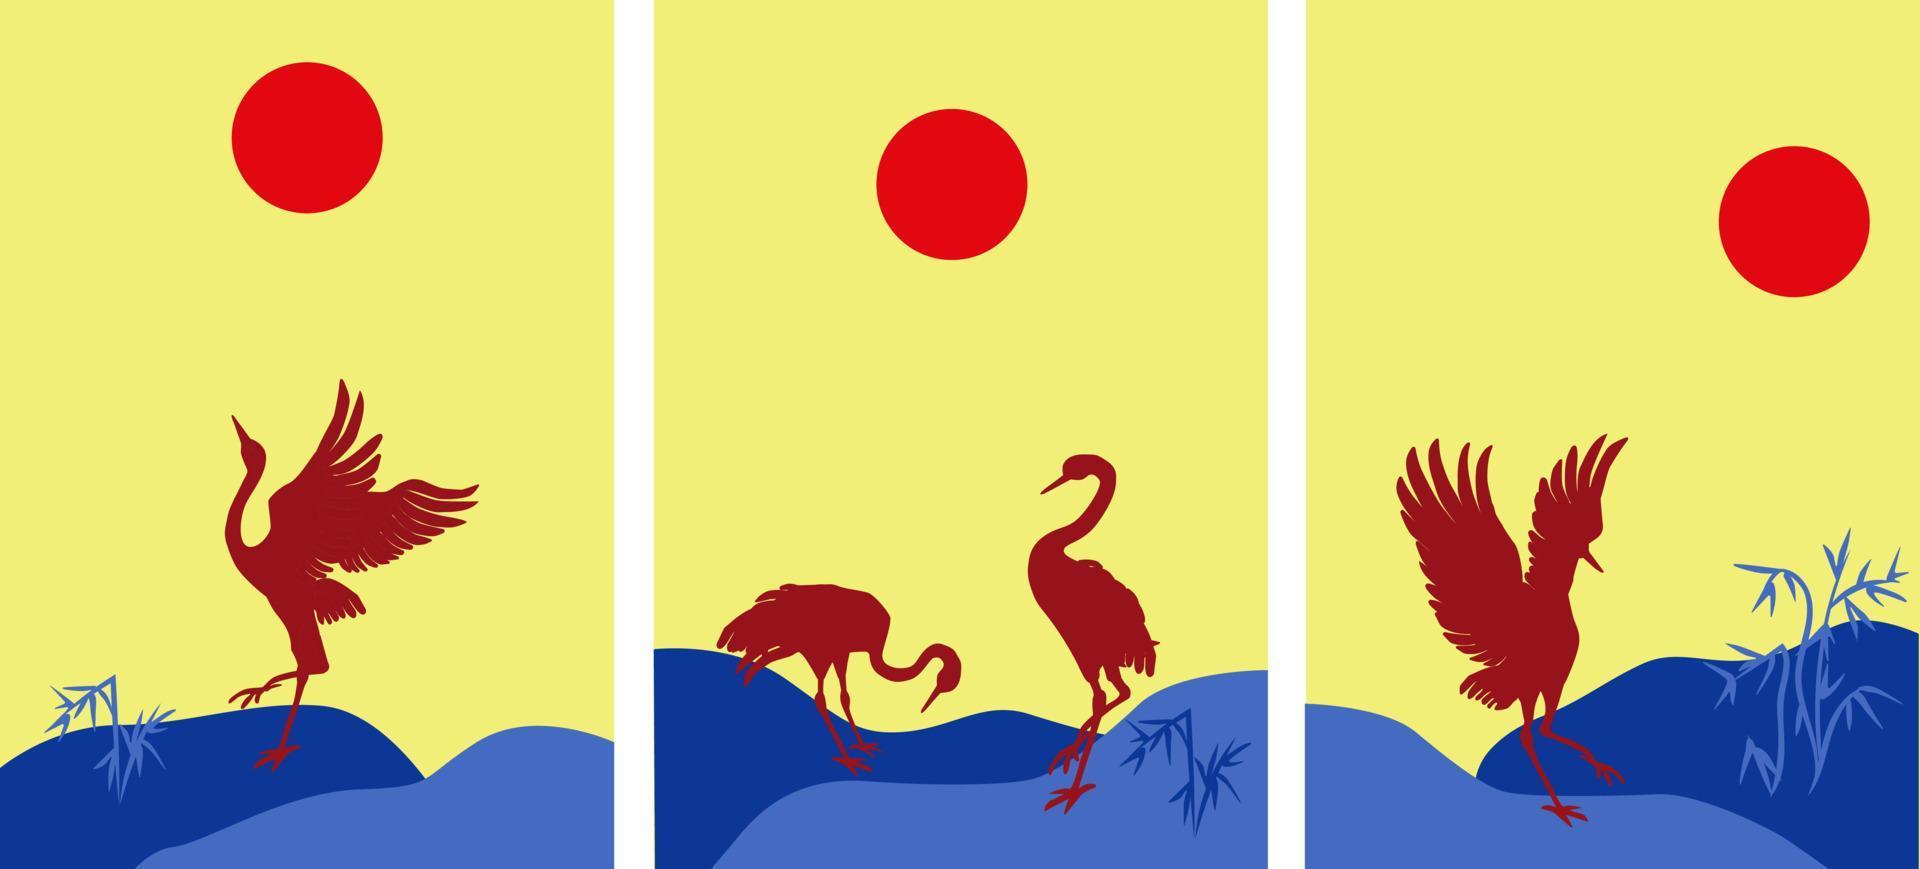 Poster im japanischen Stil mit Kran bei Sonnenuntergang vektor